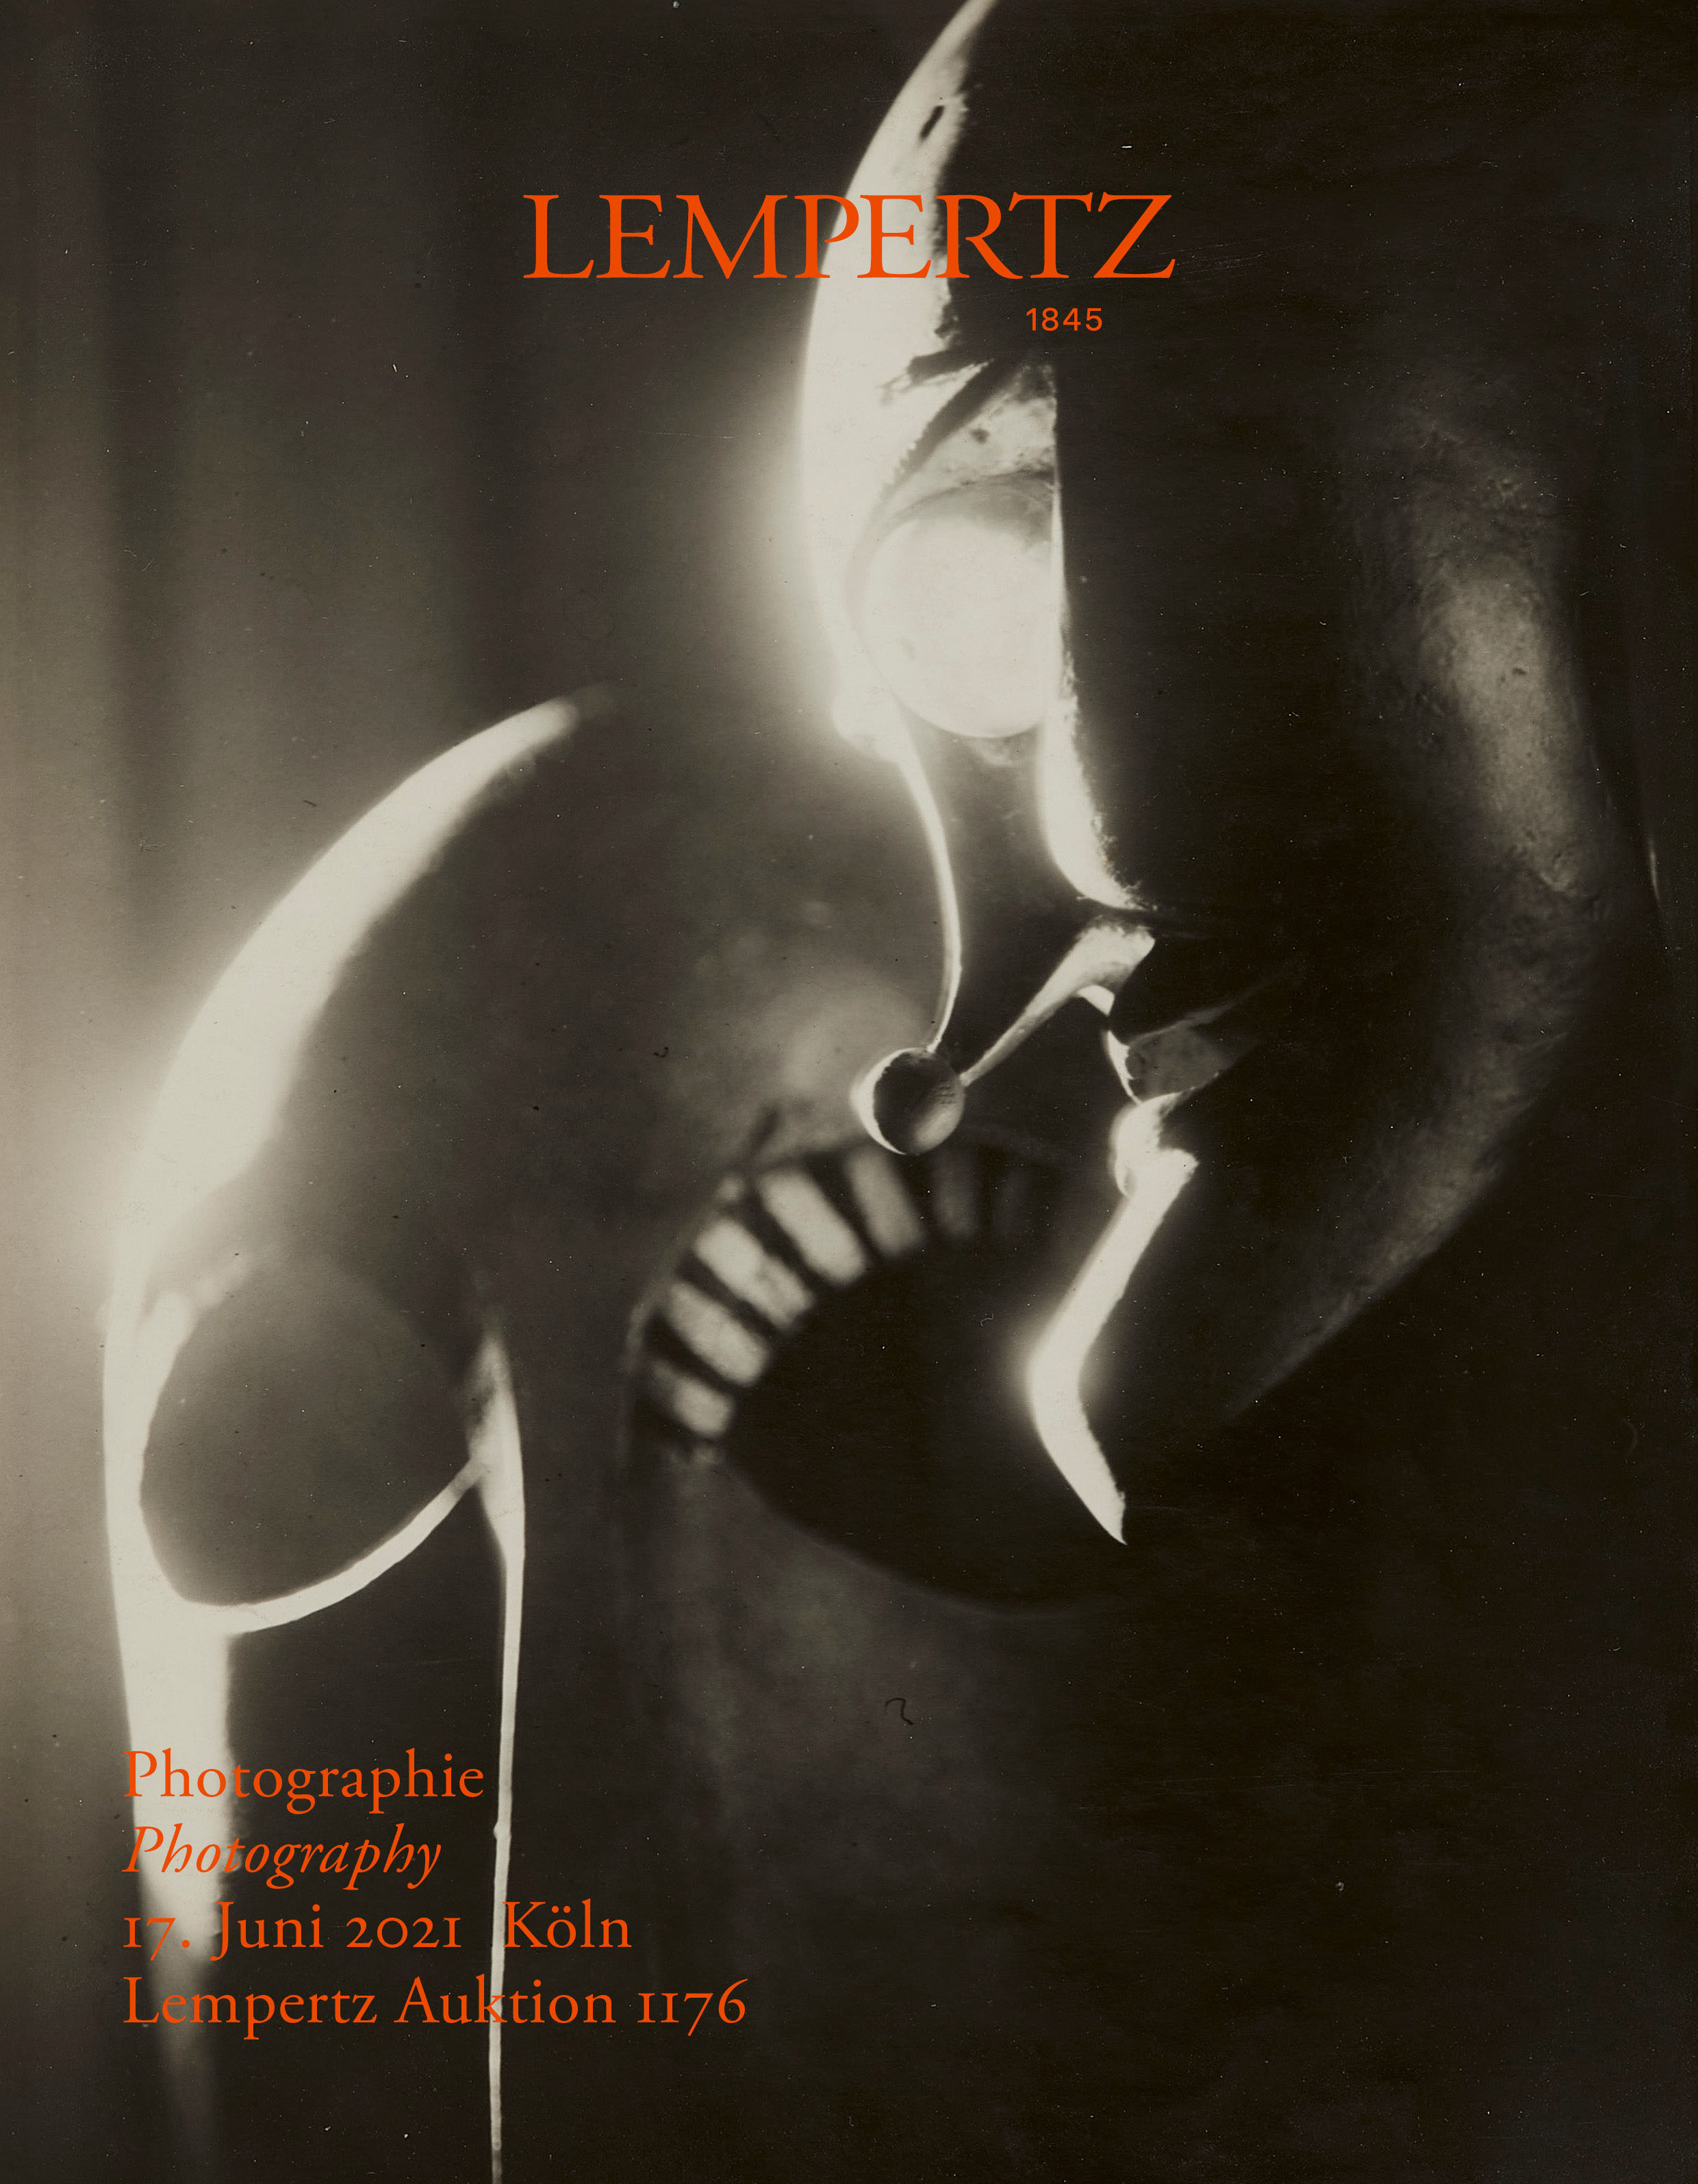 Auktionskatalog - Photographie - Online Katalog - Auktion 1176 – Ersteigern Sie hochwertige Kunst in der nächsten Lempertz-Auktion!